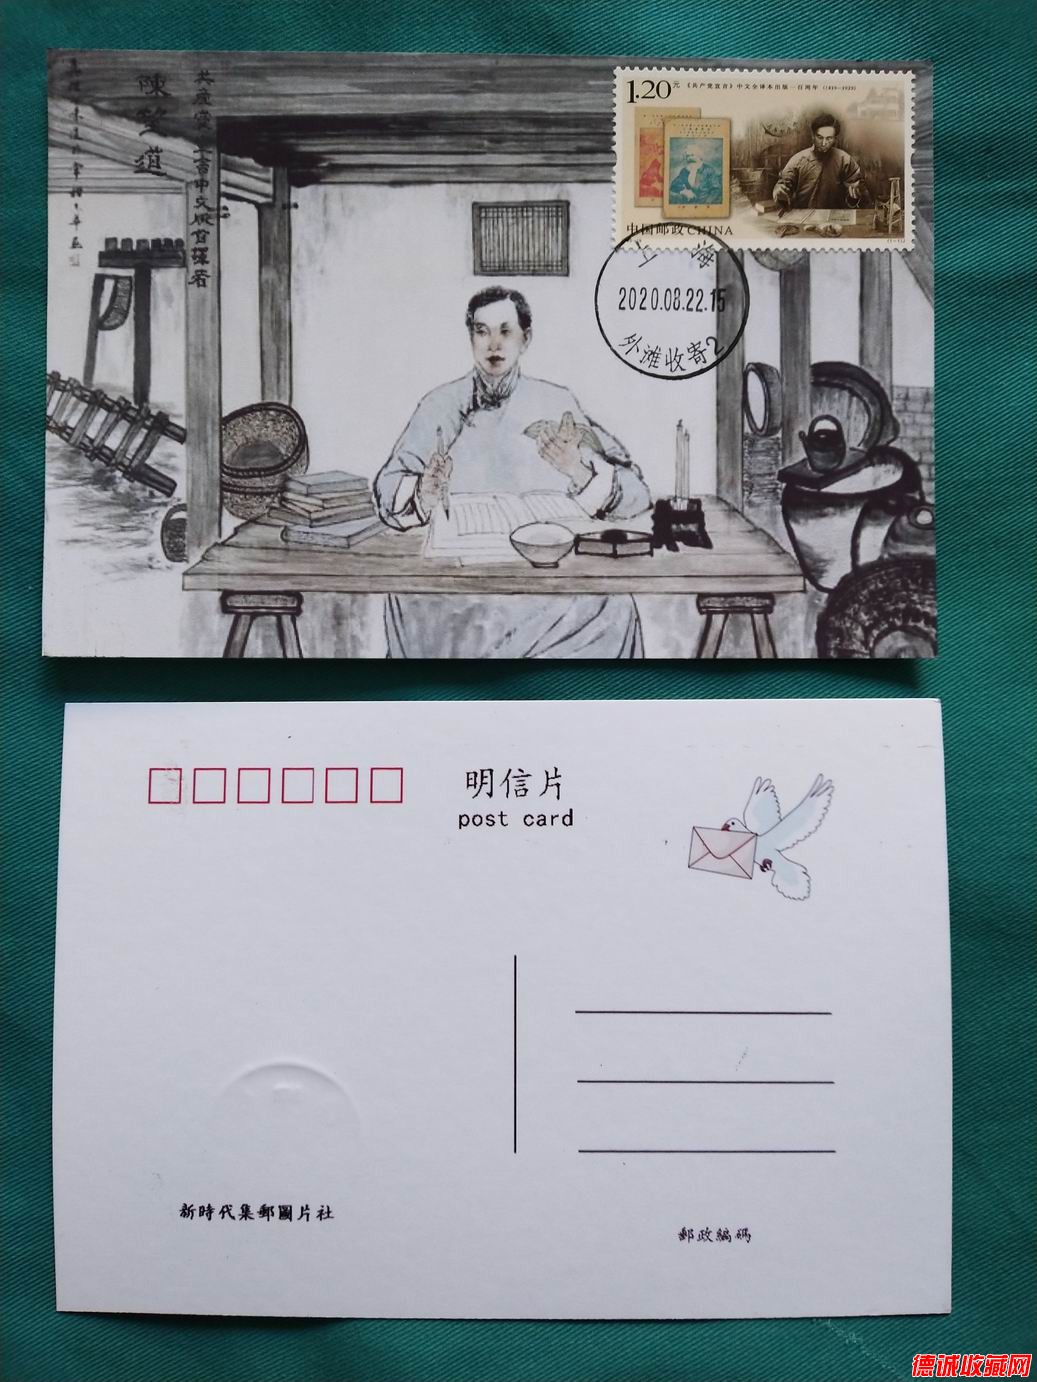 2020年共產黨宣言郵票極限片1枚(上海首日戳)之三.jpg